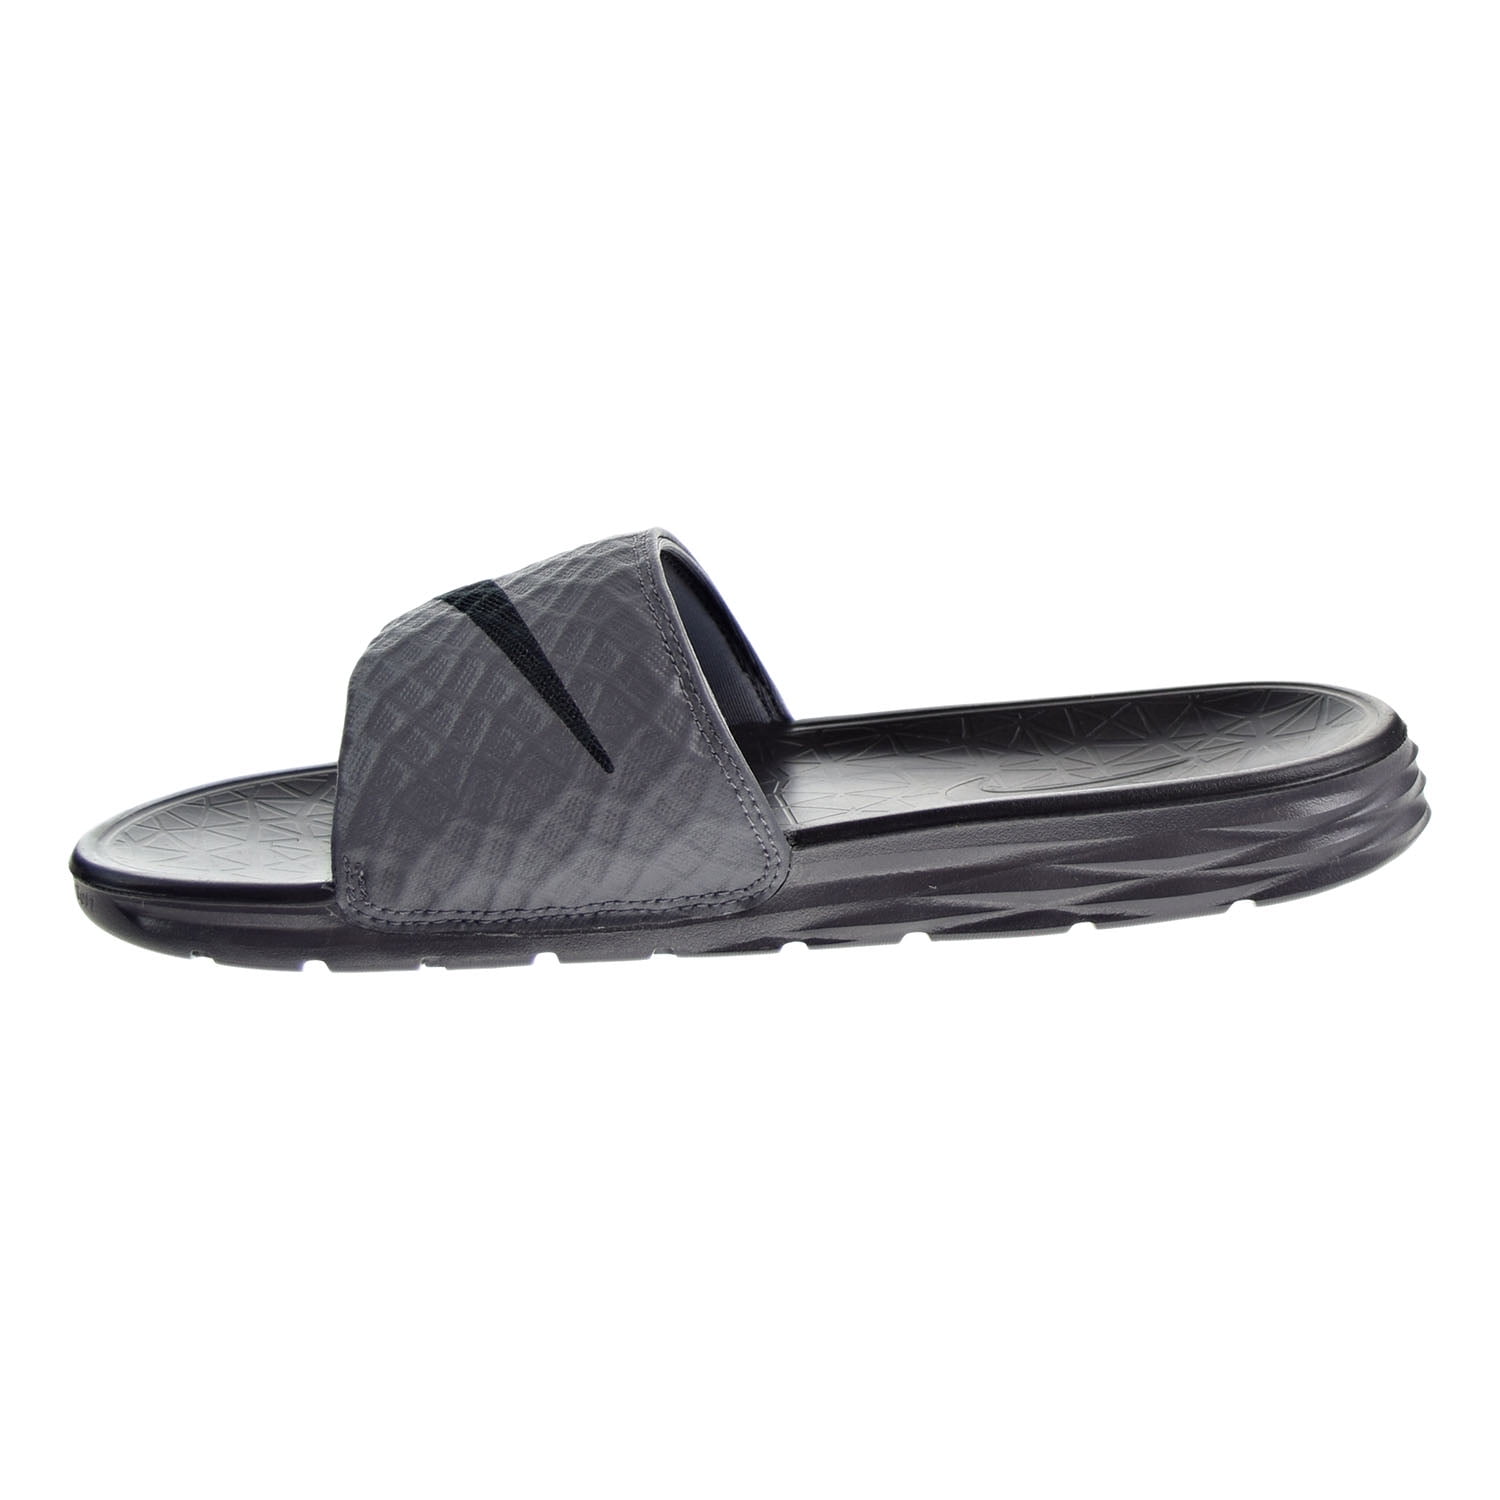 nike men's benassi solarsoft slide athletic sandal